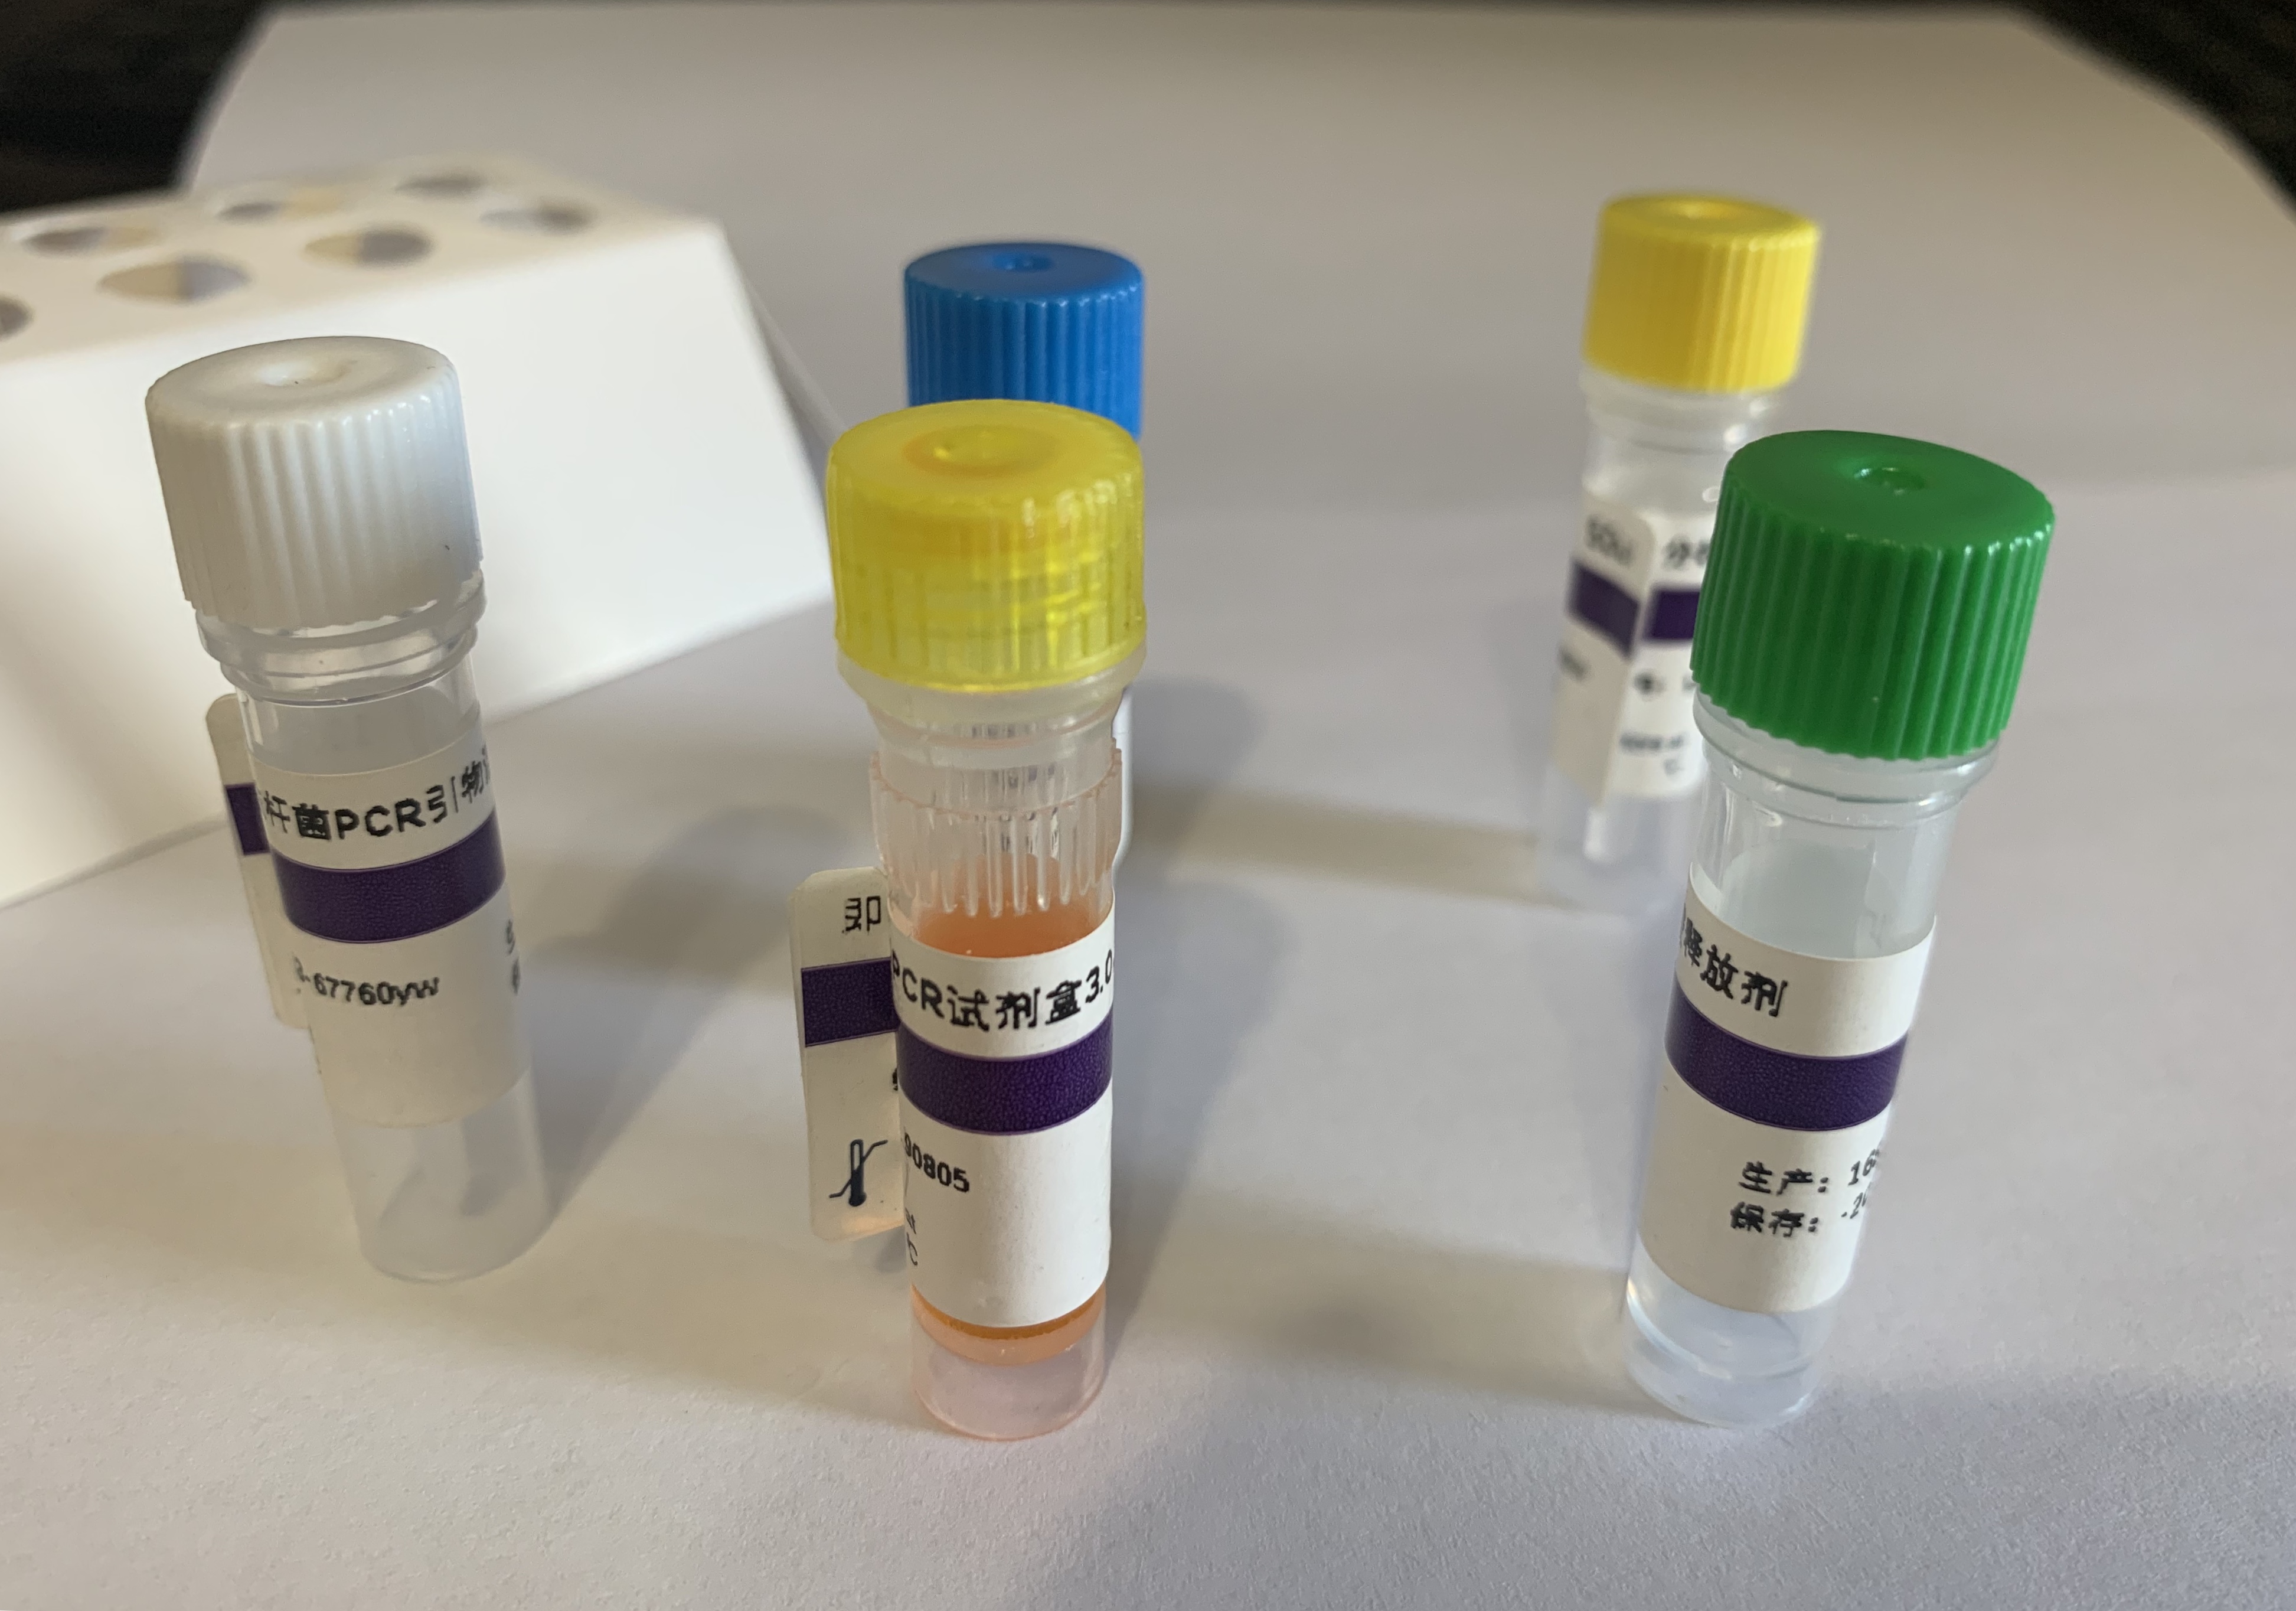 立枯丝核菌染料法荧光定量PCR试剂盒